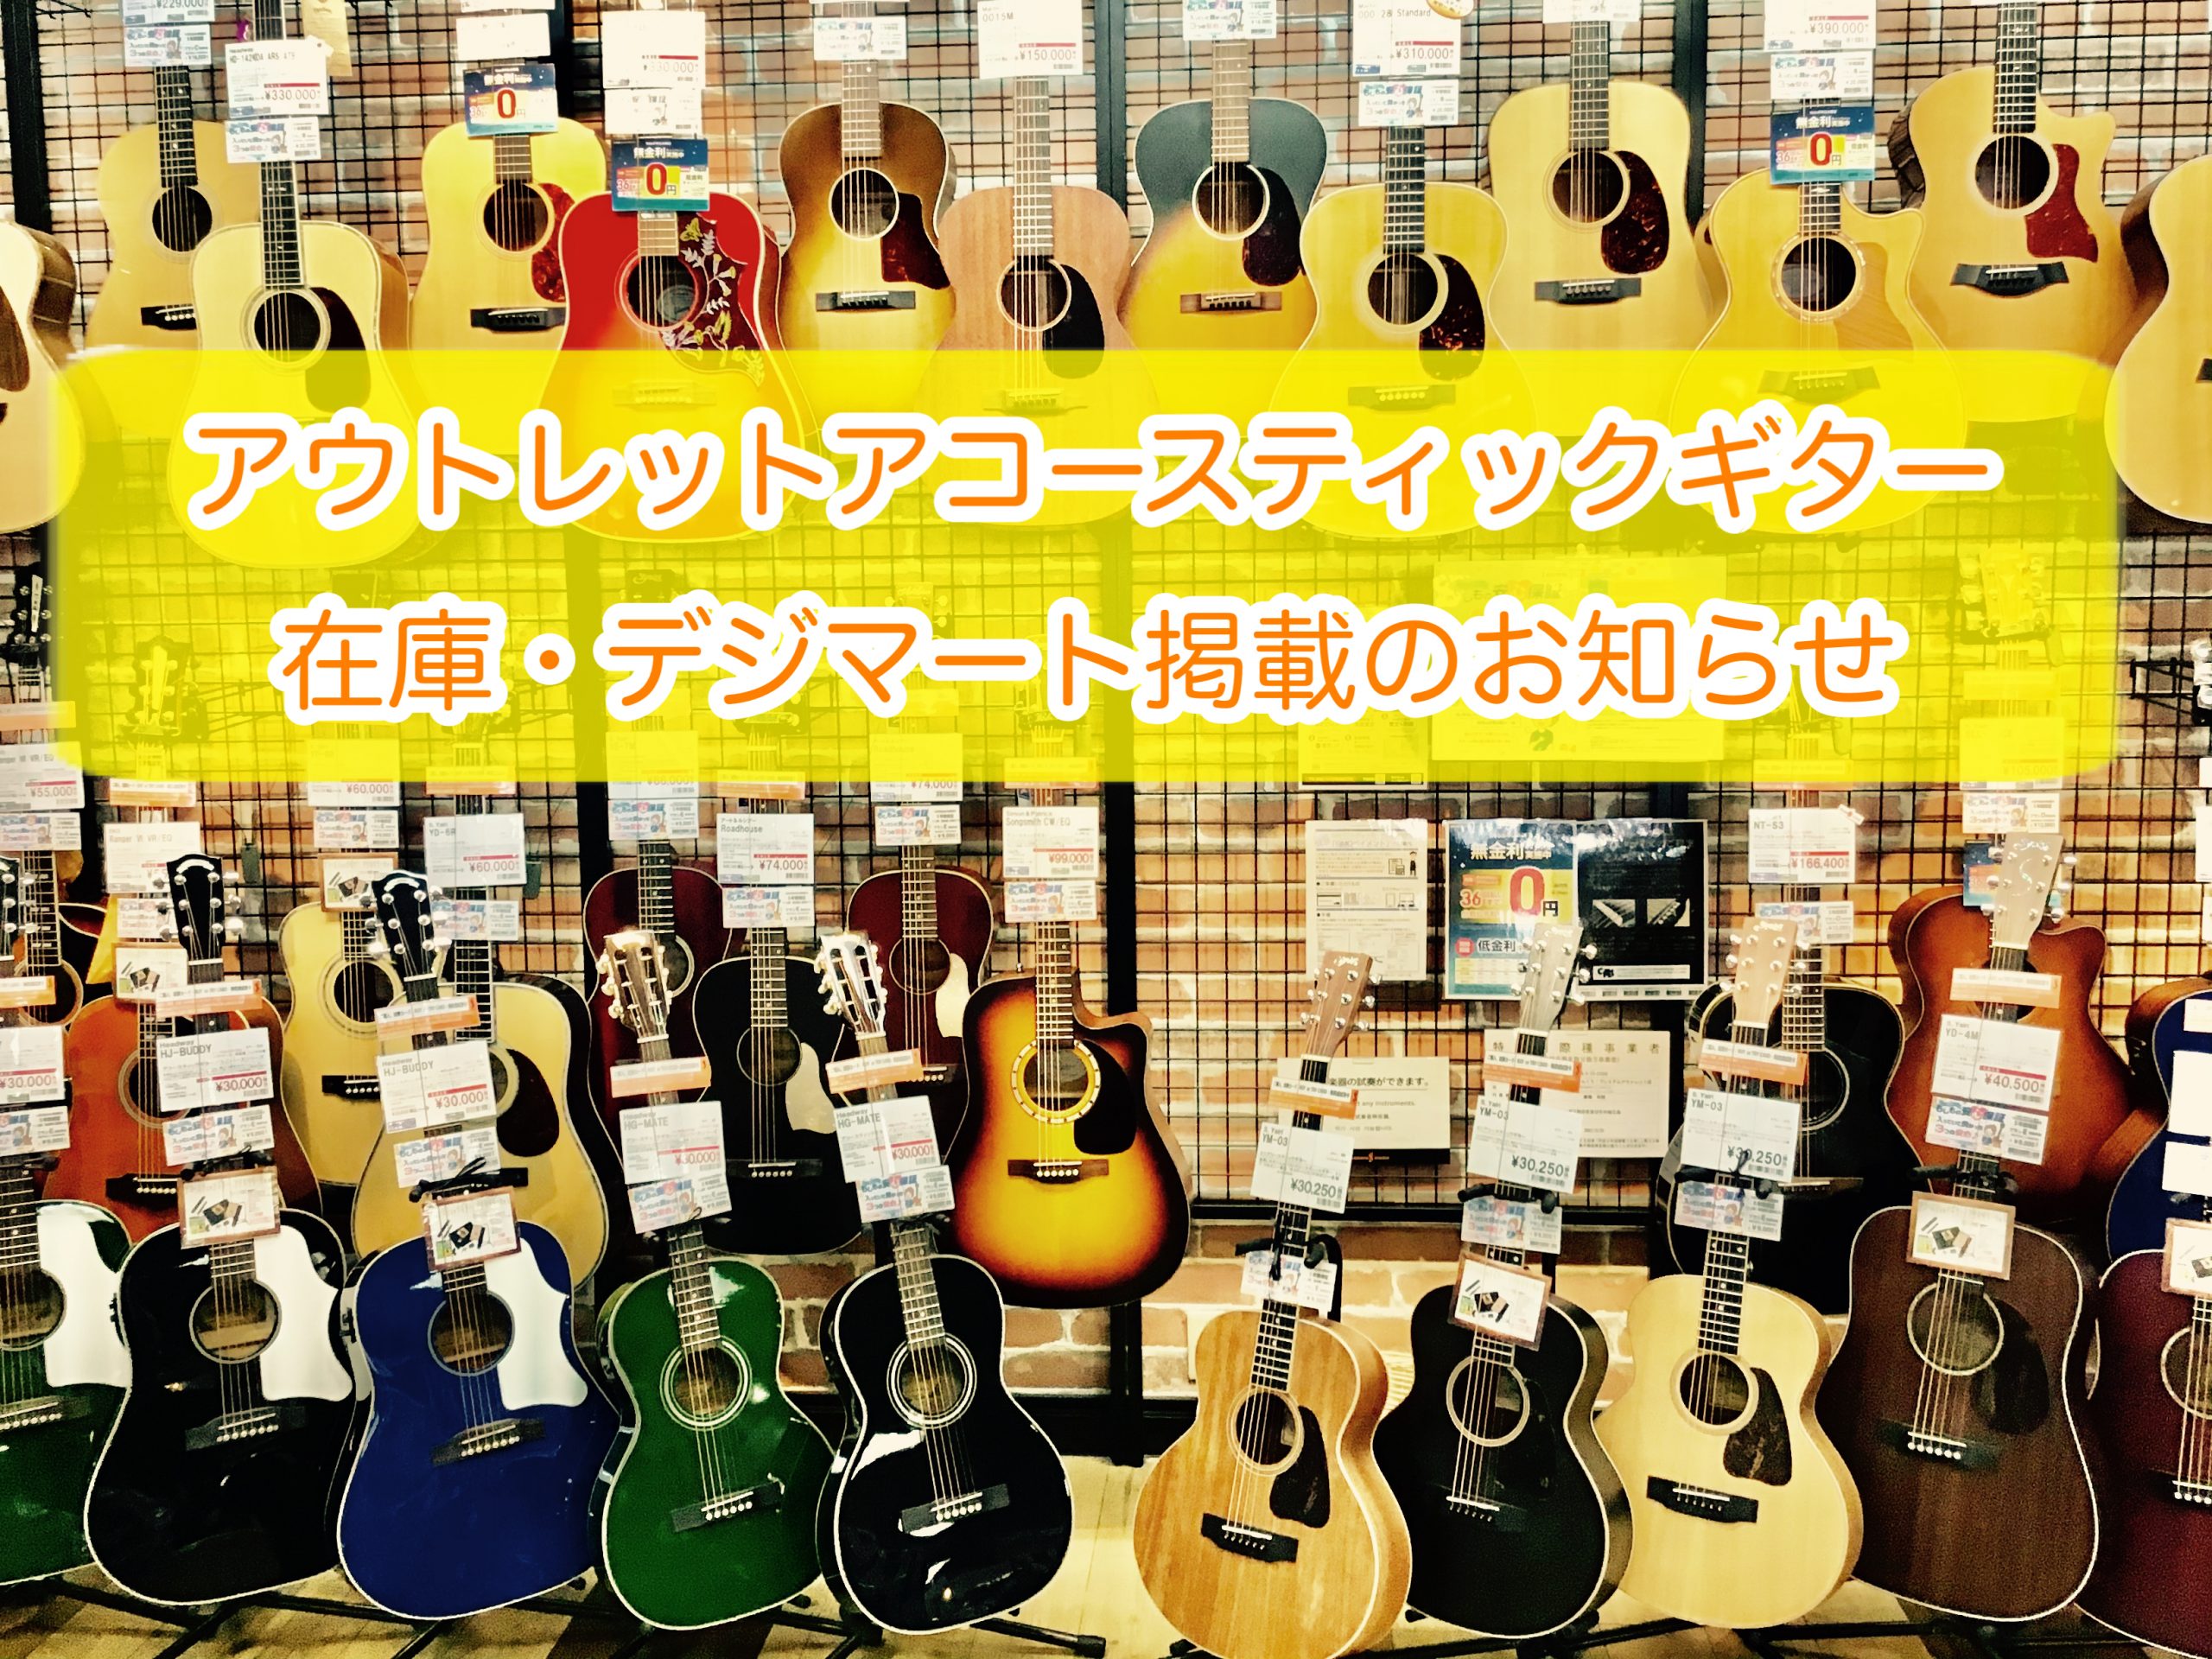 [https://www.shimamura.co.jp/shop/rinkuu/article/product/20220404/10906::title=] 皆様こんにちは！ギターアドバイザーの日高でございます！ りんくうアウトレット店に展示しているアコースティックギターをご紹介します。]]探し […]